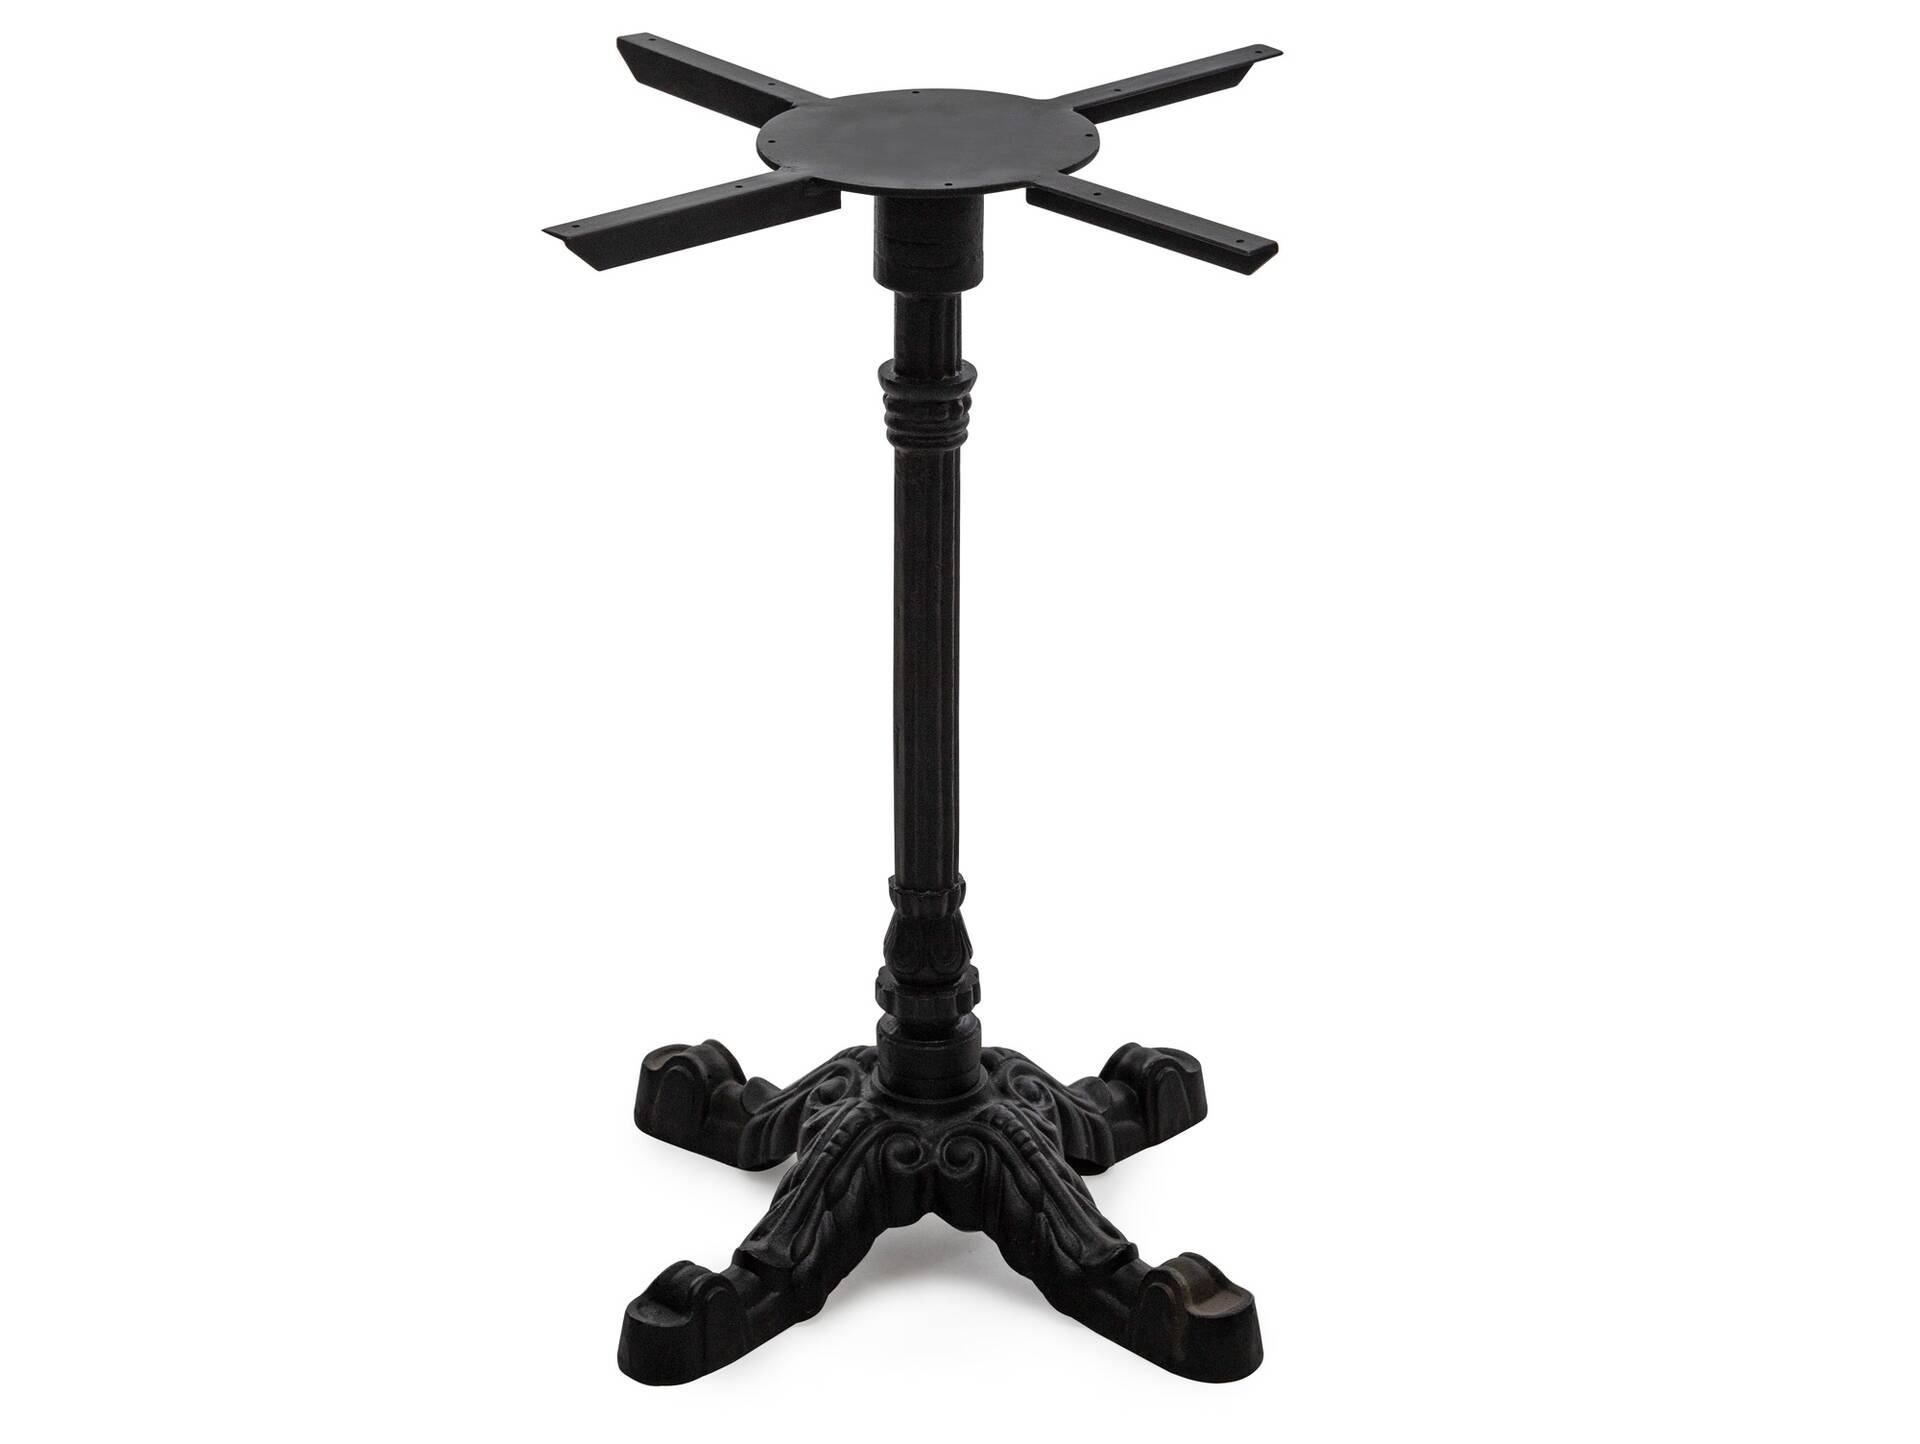 Tischgestell für Esstisch, Material Metall, schwarz lackiert, Höhe: 73 cm 